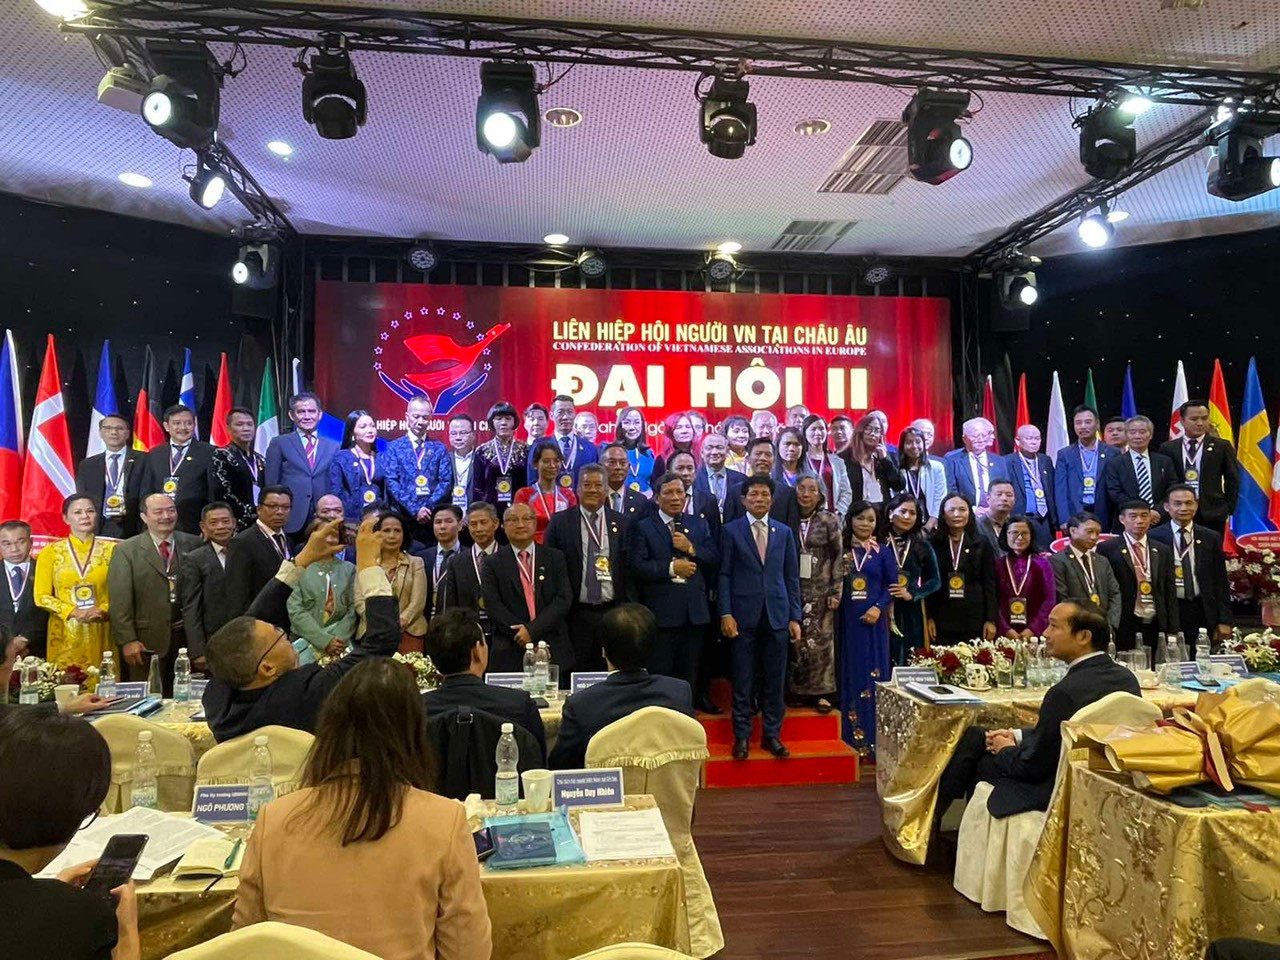 Đại hội lần thứ II Liên Hiệp hội người Việt Nam tại châu Âu diễn ra tại Thủ đô Praha, Cộng hòa Séc. 